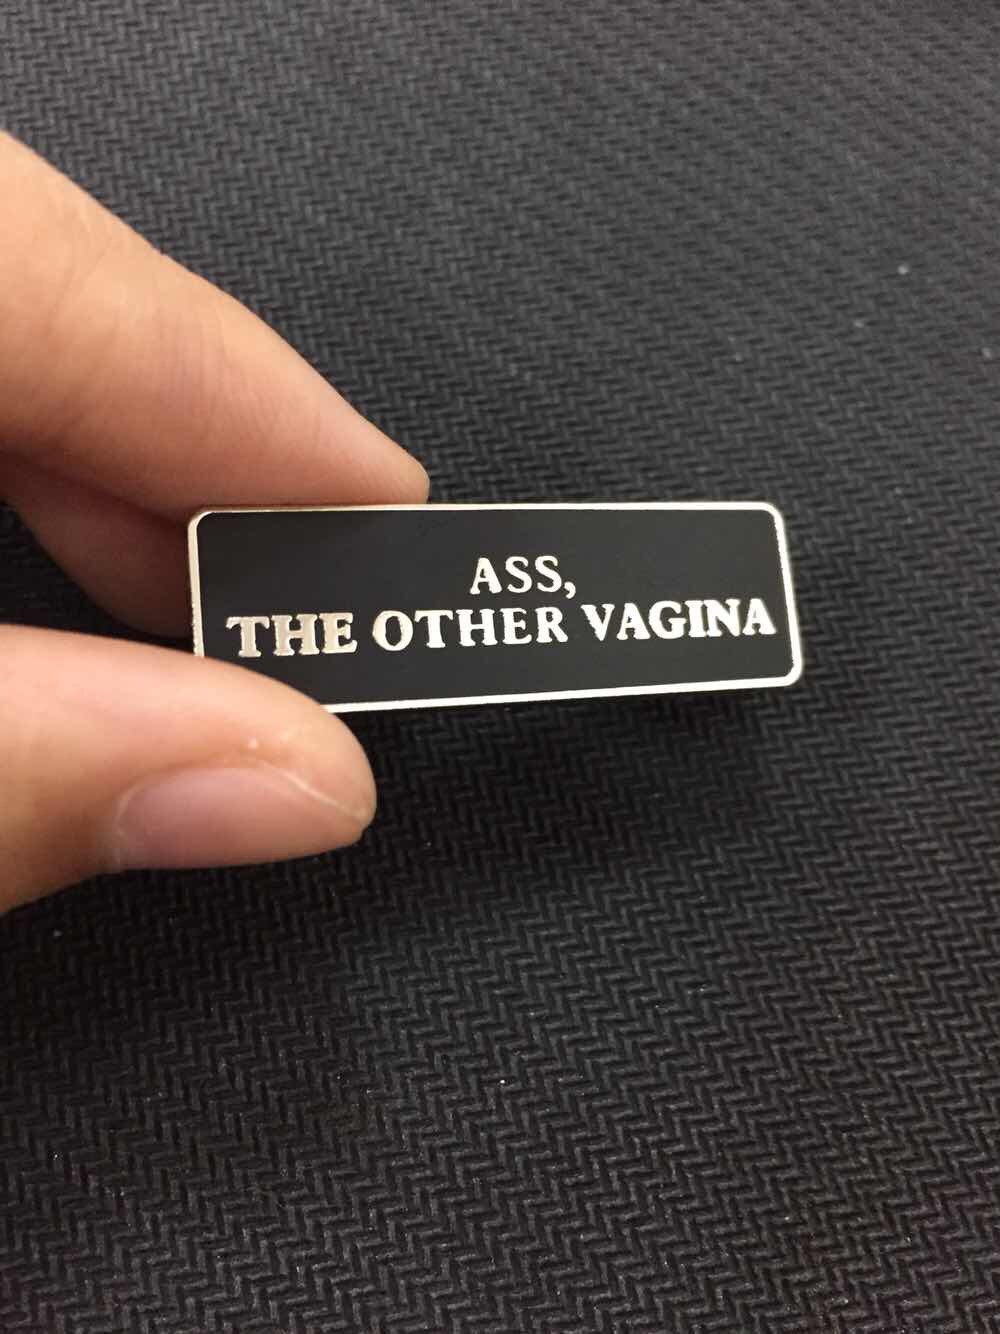 Ass, The Other Vagina Lapel Pin